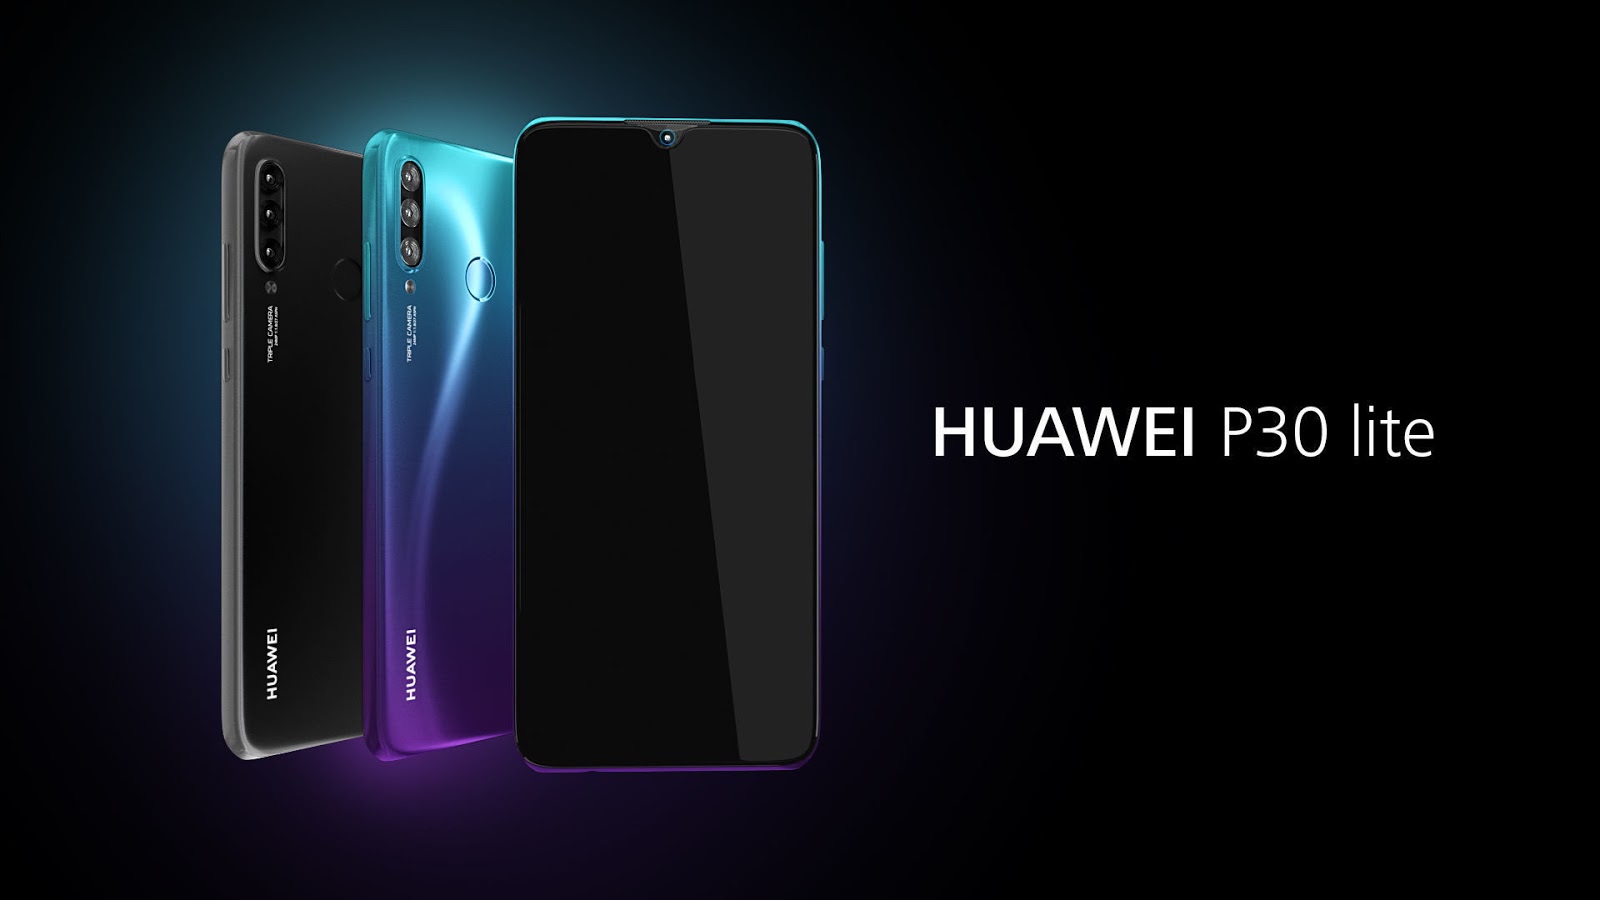 كل شيئ عن هاتف Huawei P30 Lite ... المواصفات، السعر، المميزات و العيوب